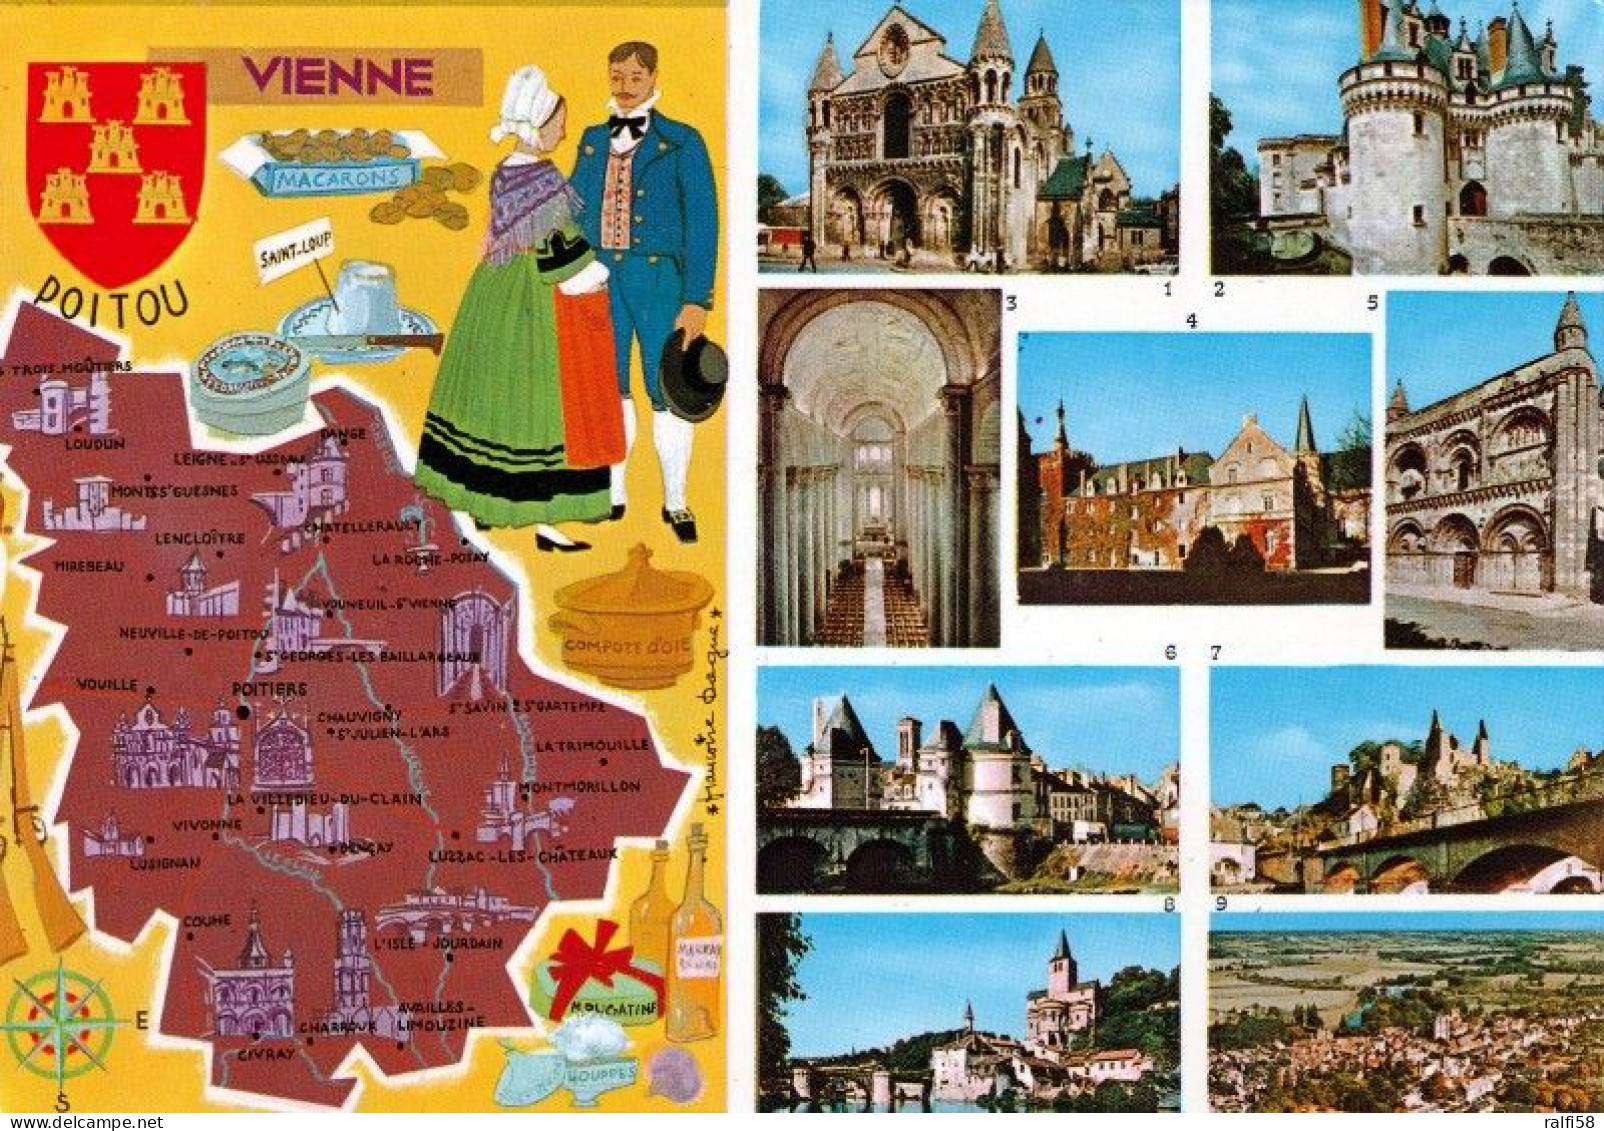 1 Map Of France * 1 Ansichtskarte Mit Der Landkarte - Département Vienne - Ordnungsnummer 86 * - Landkarten